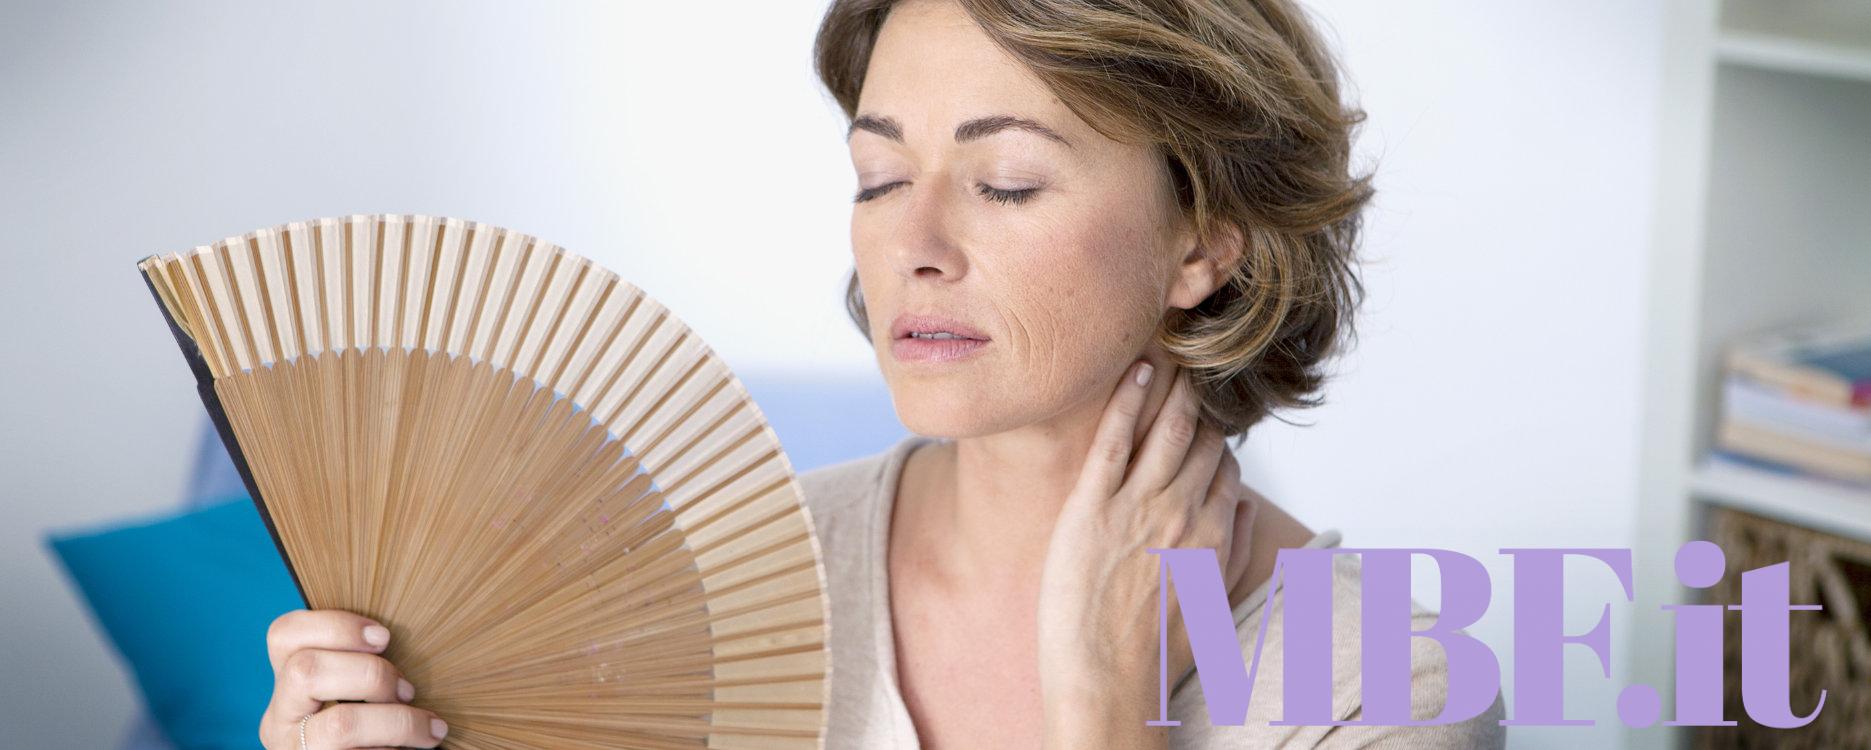 Come trattare i sintomi della menopausa?